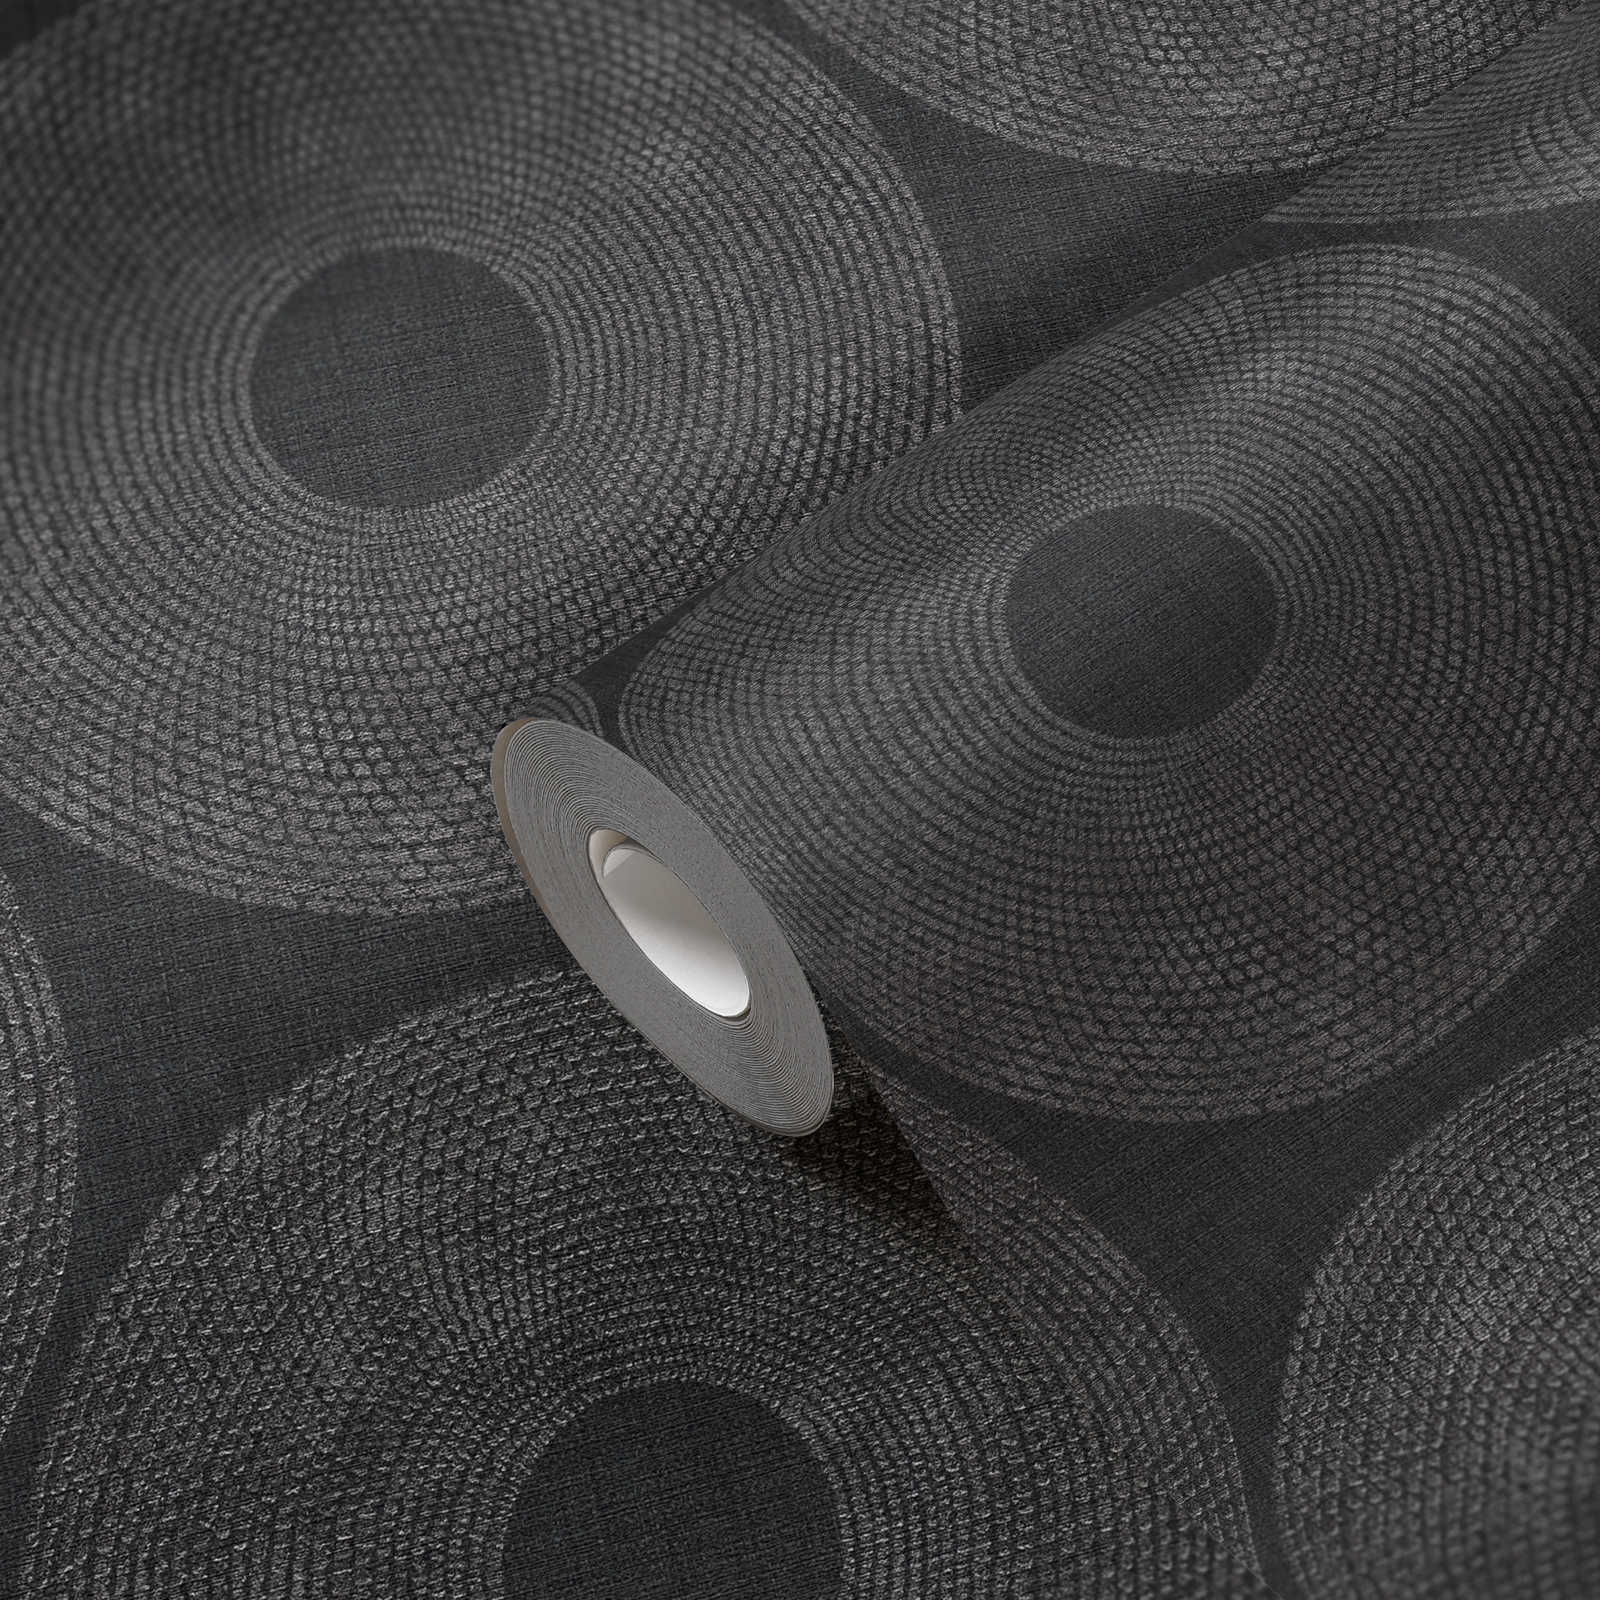             Ethno behang cirkels met structuurdesign - grijs, metallic
        